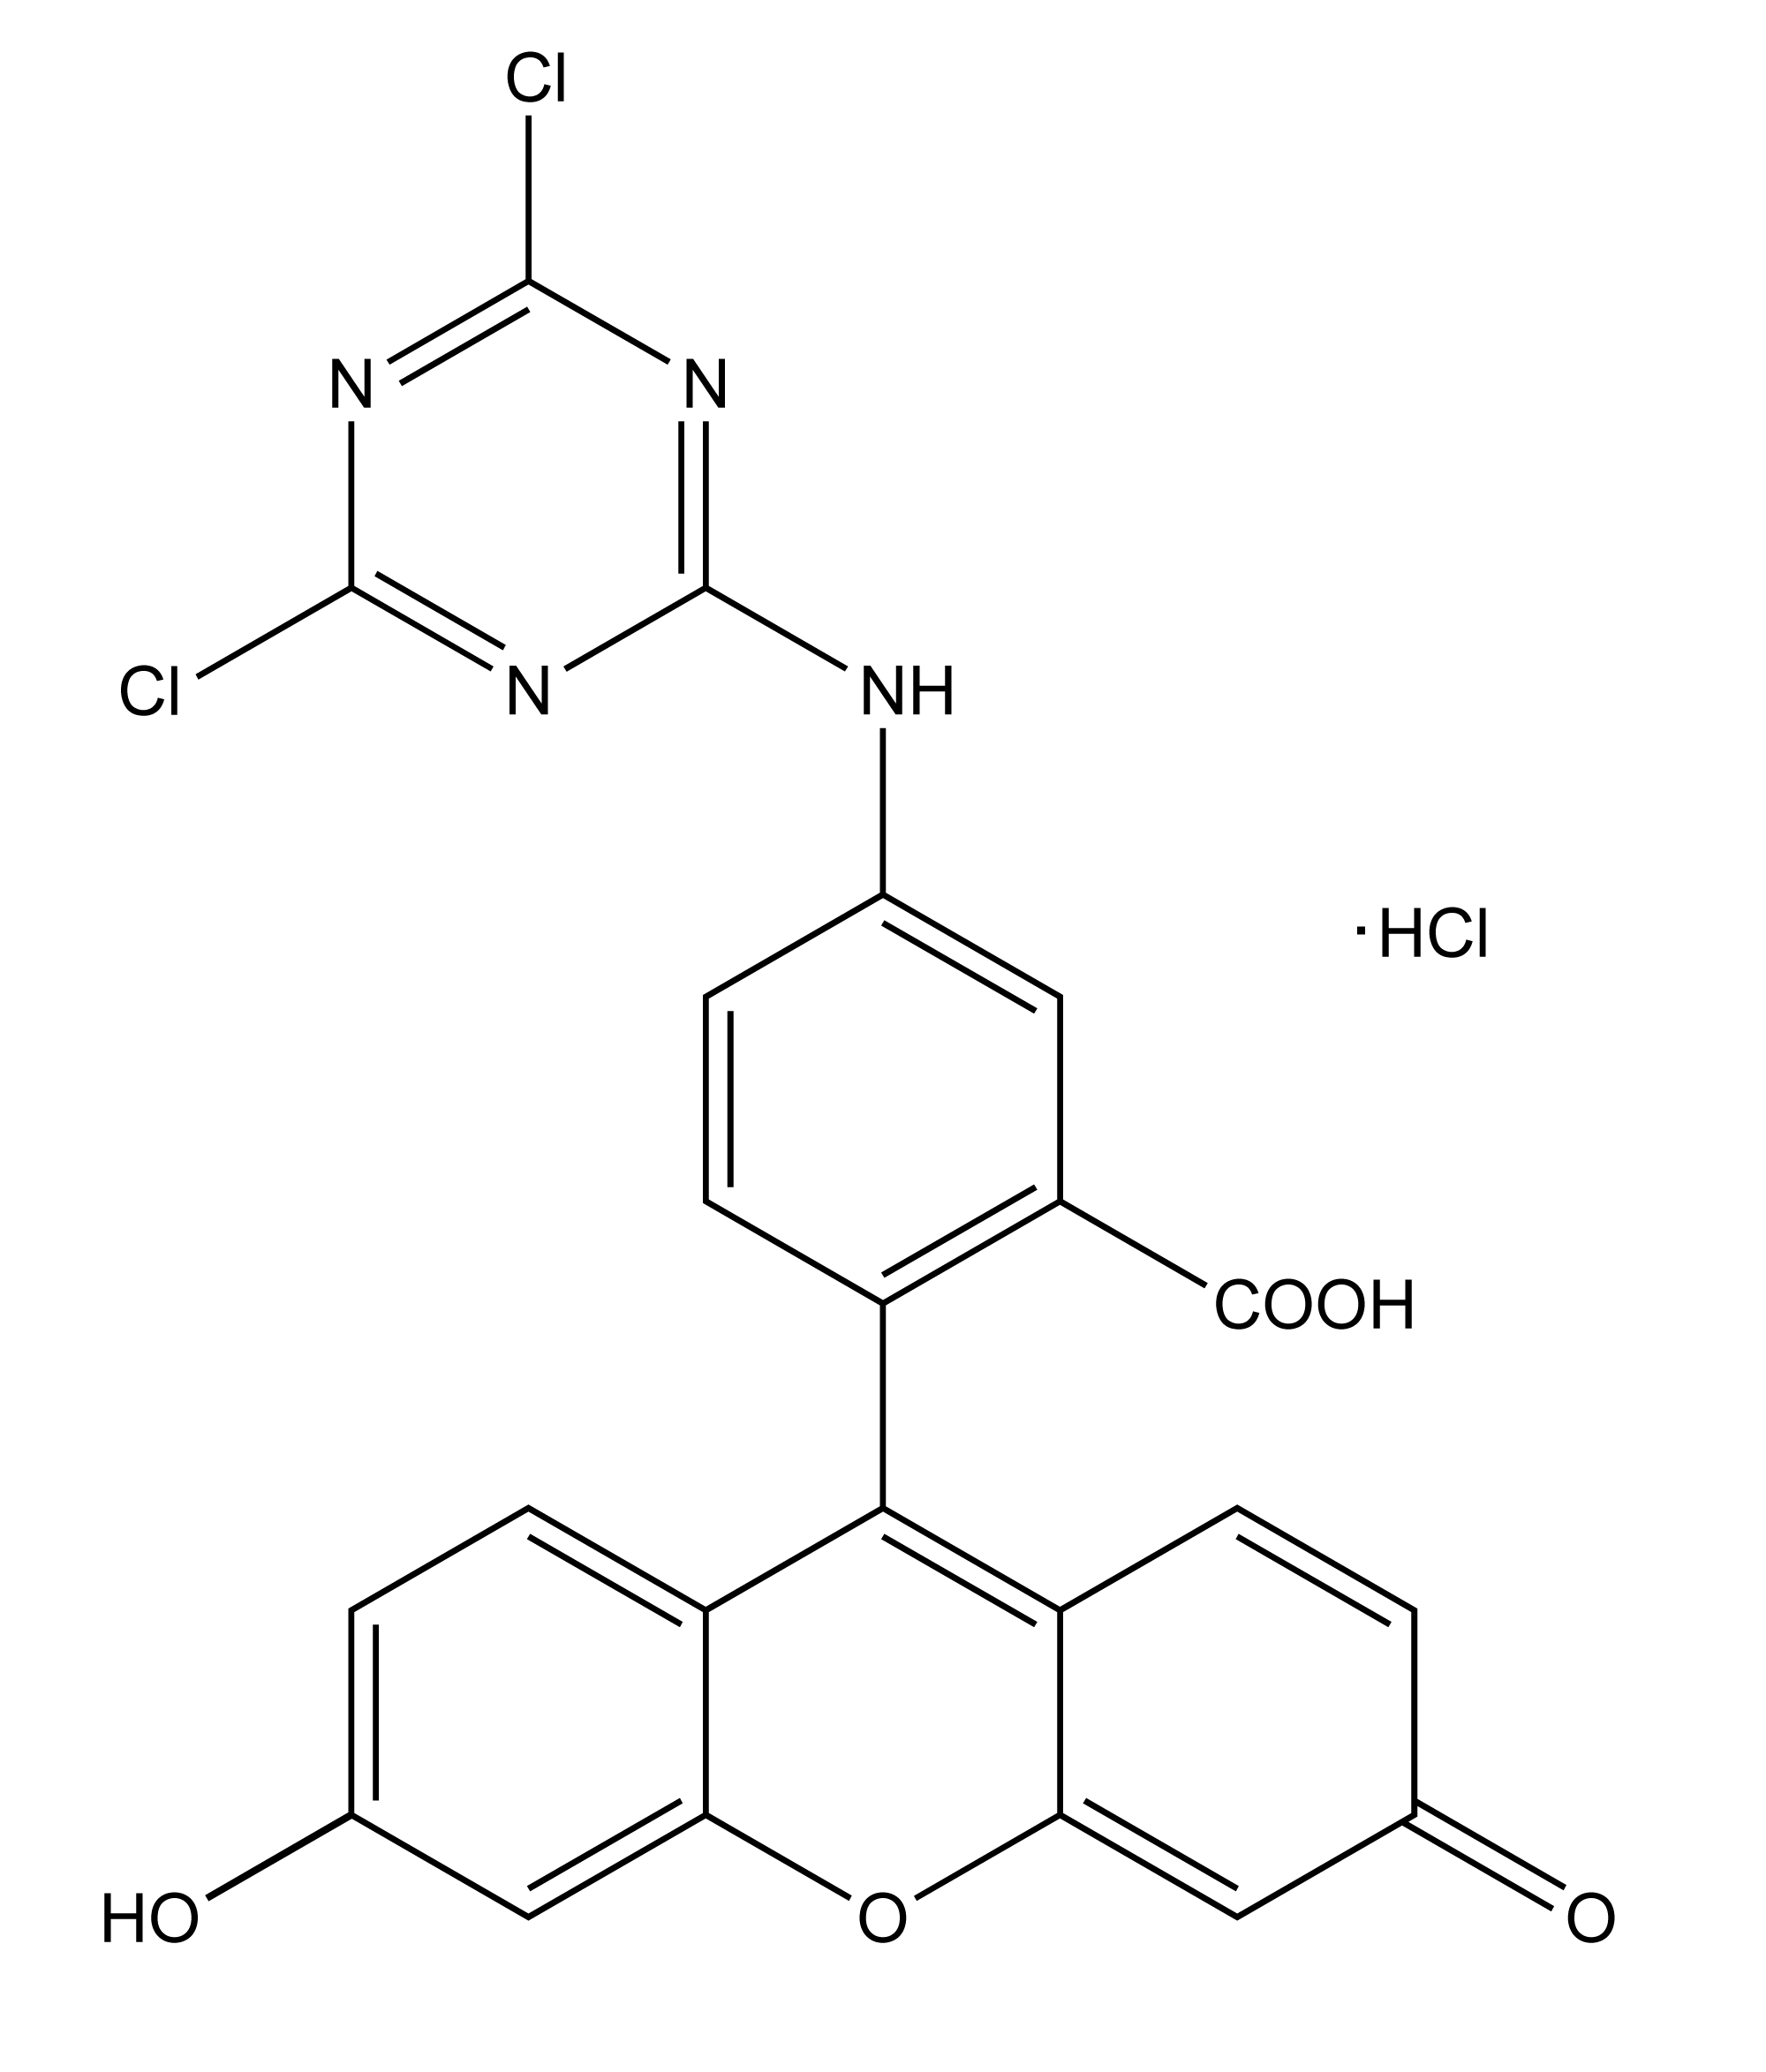 scheme:DTAF, Dichlorotriazinylaminofluorescein